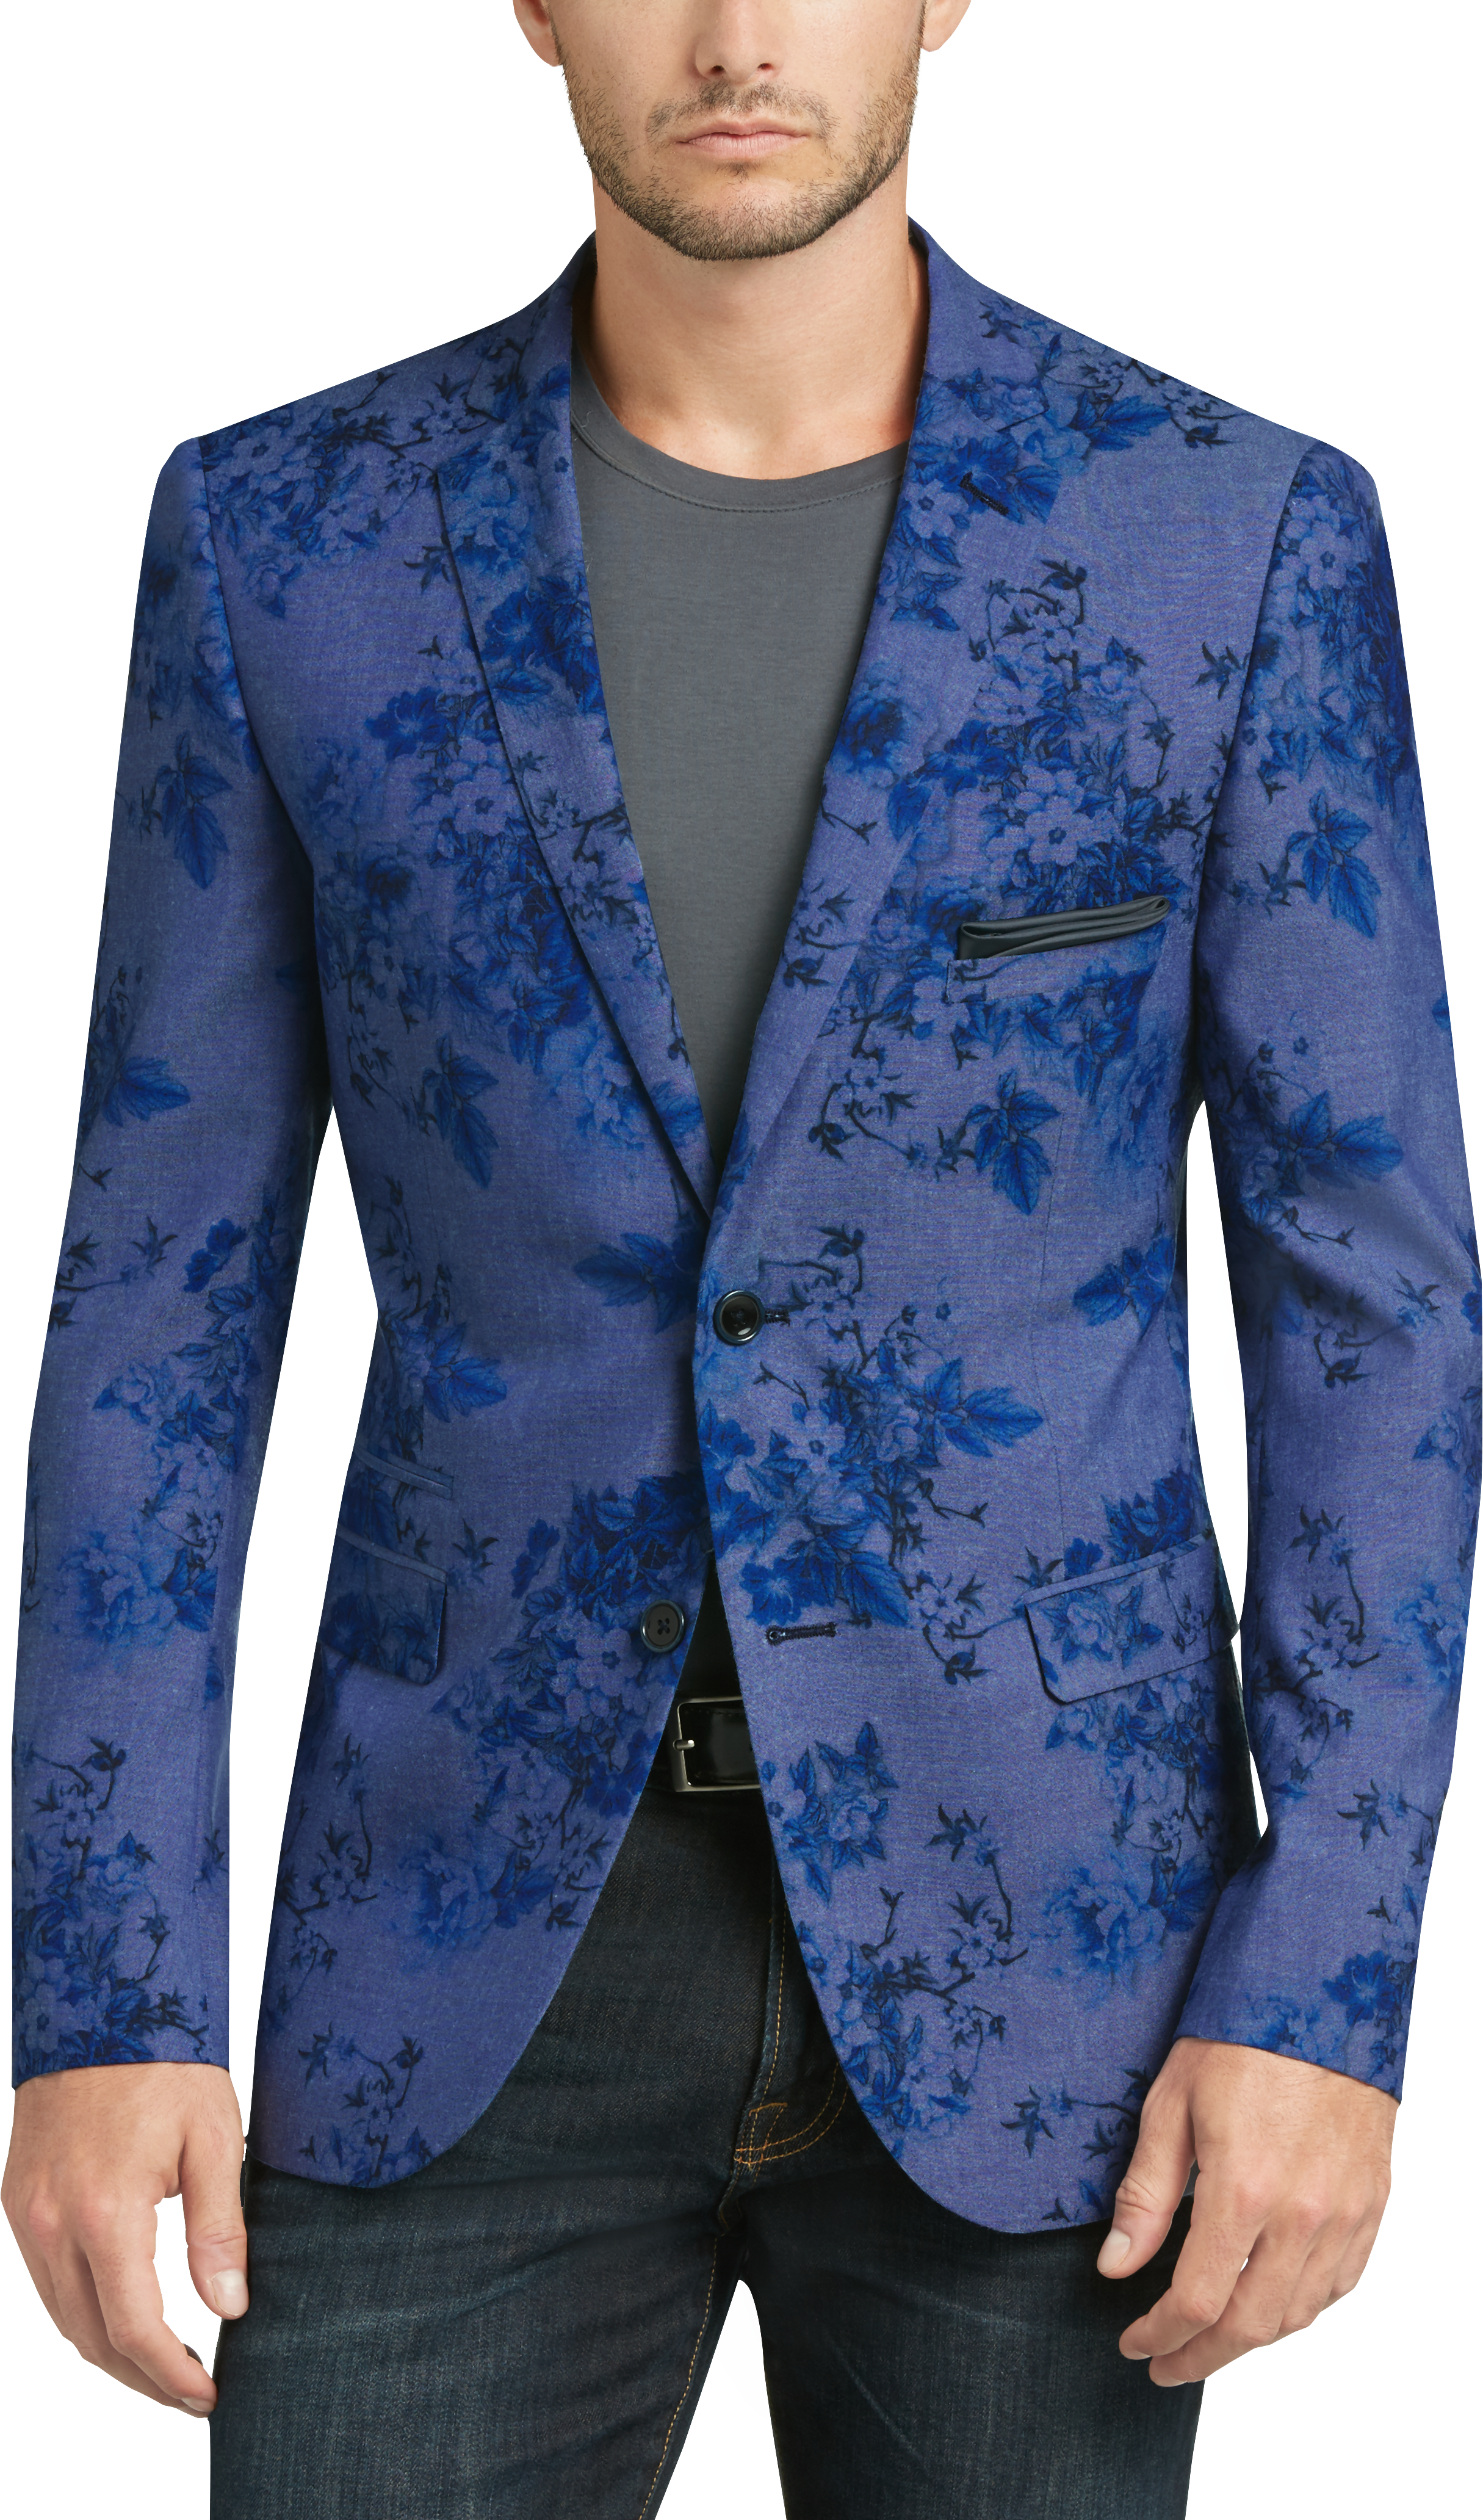 Paisley & Gray Blue Floral Slim Fit Sport Coat - Men's Suits | Men's ...